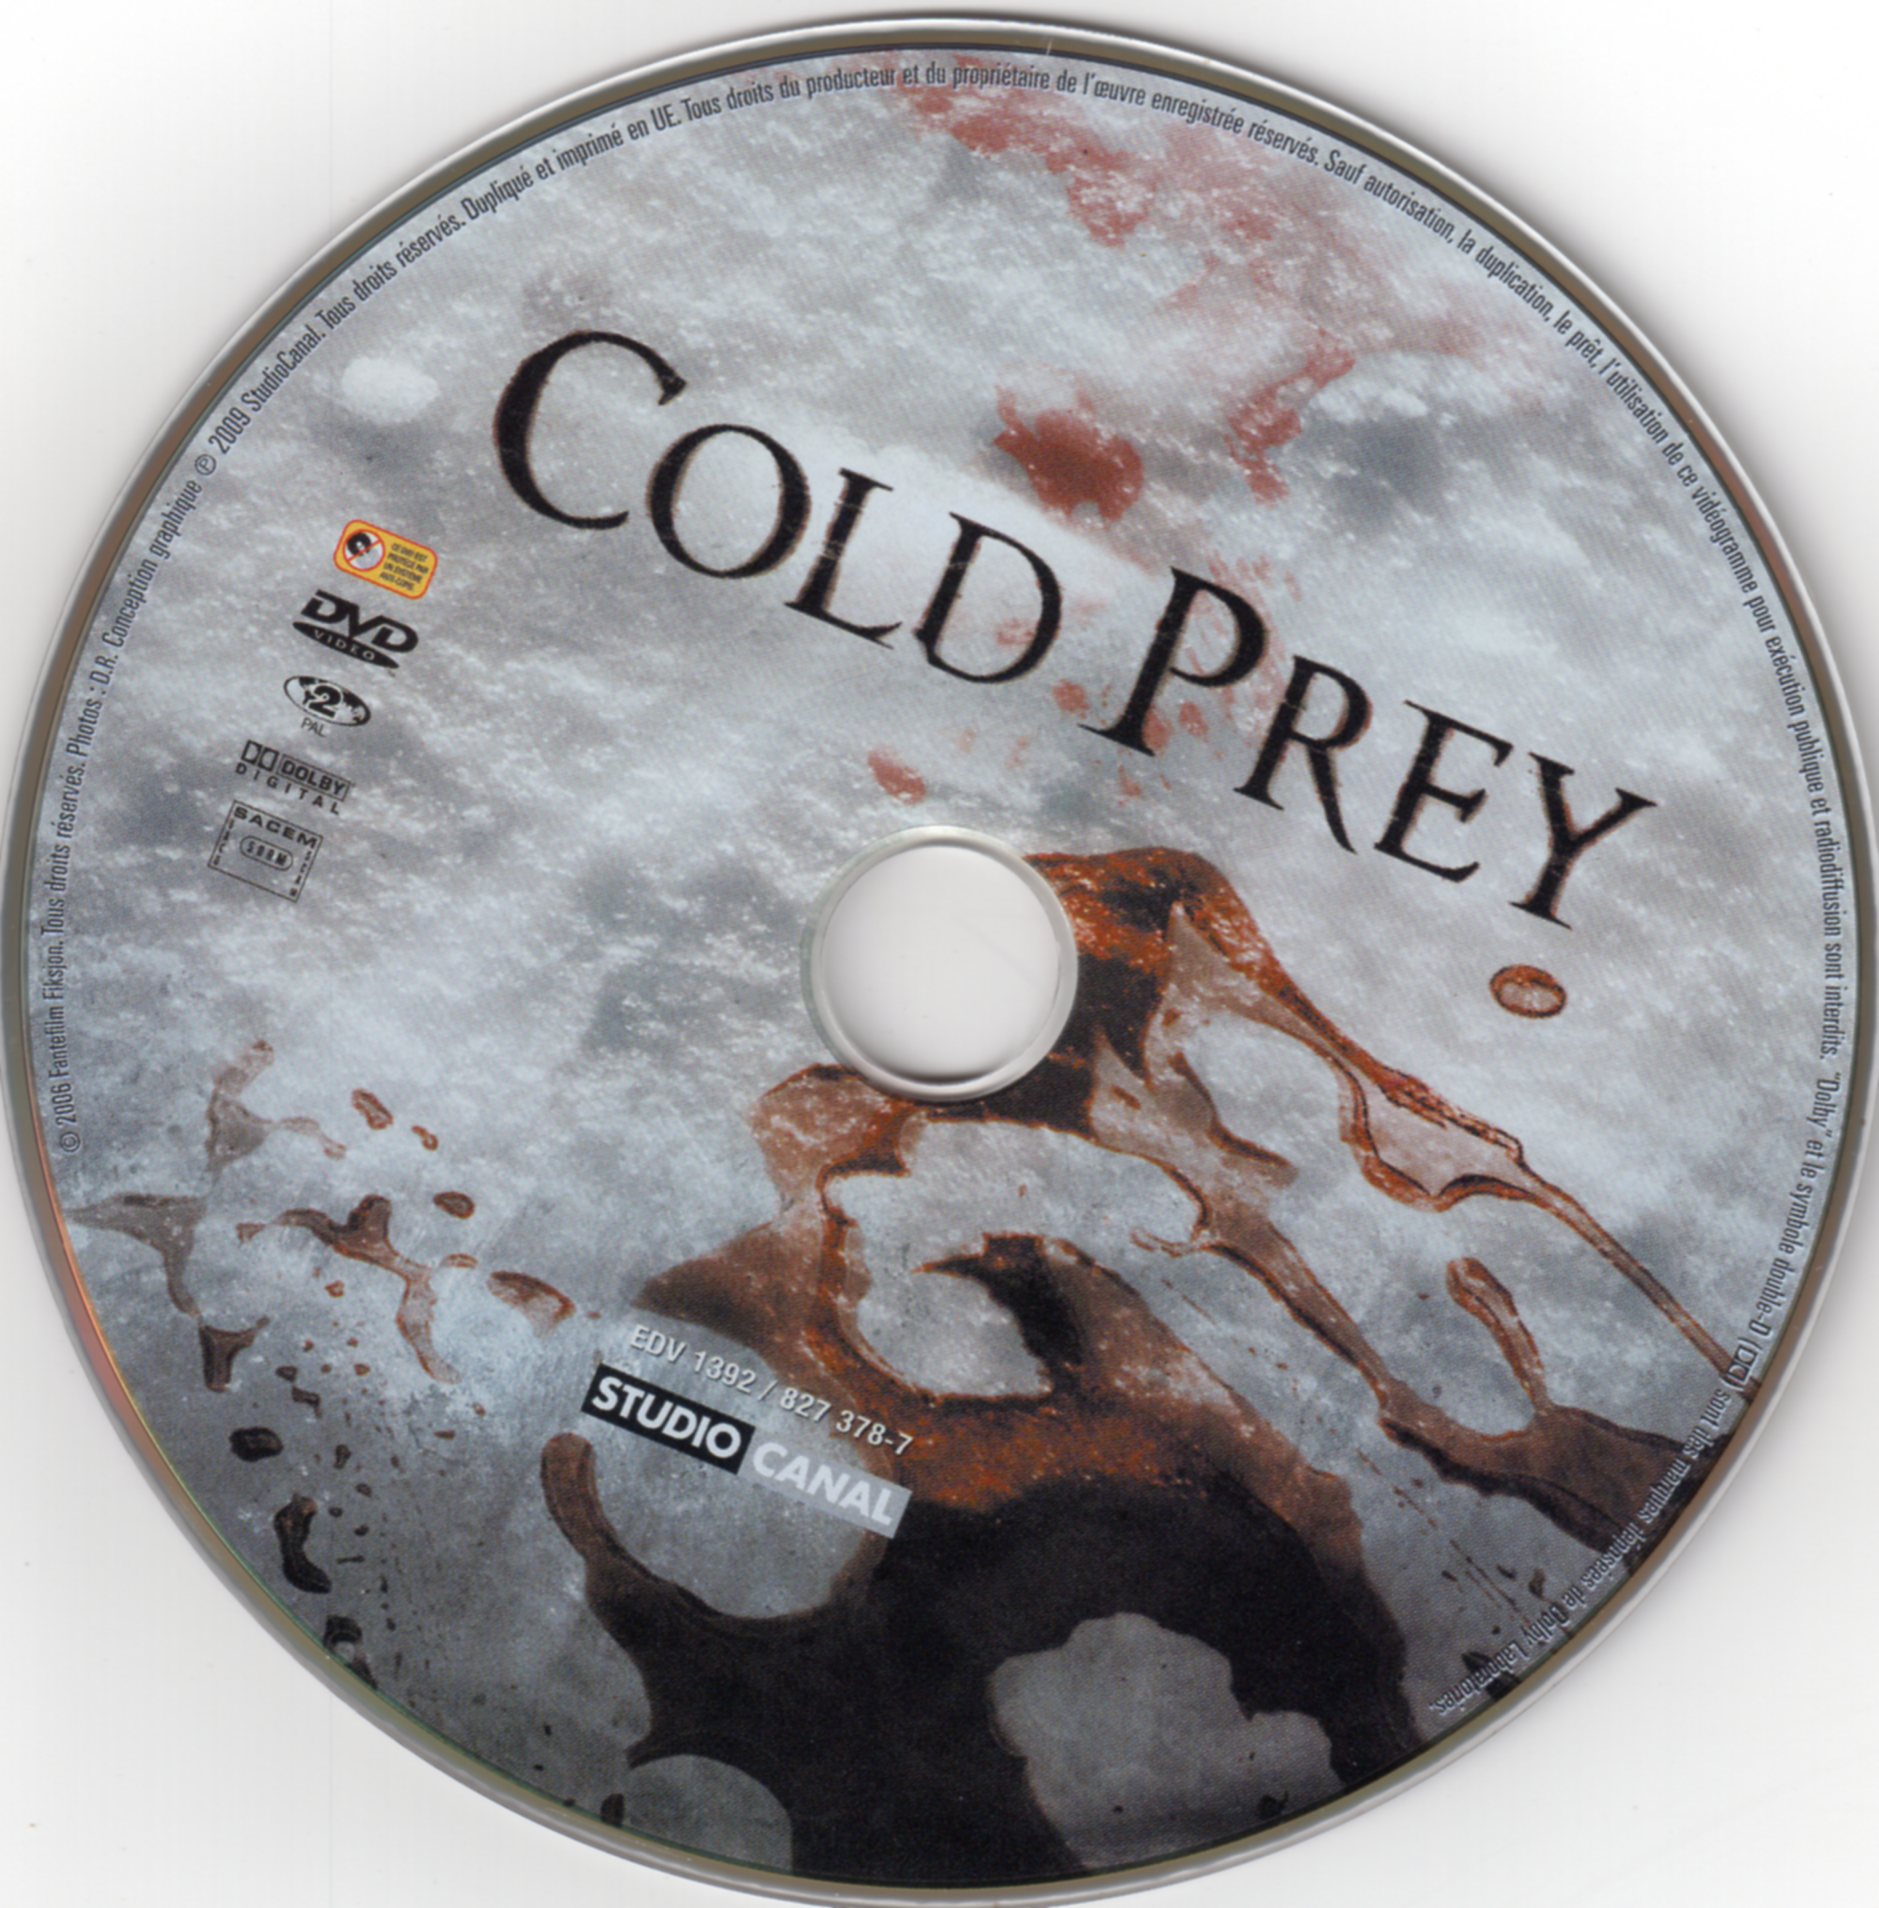 Cold prey